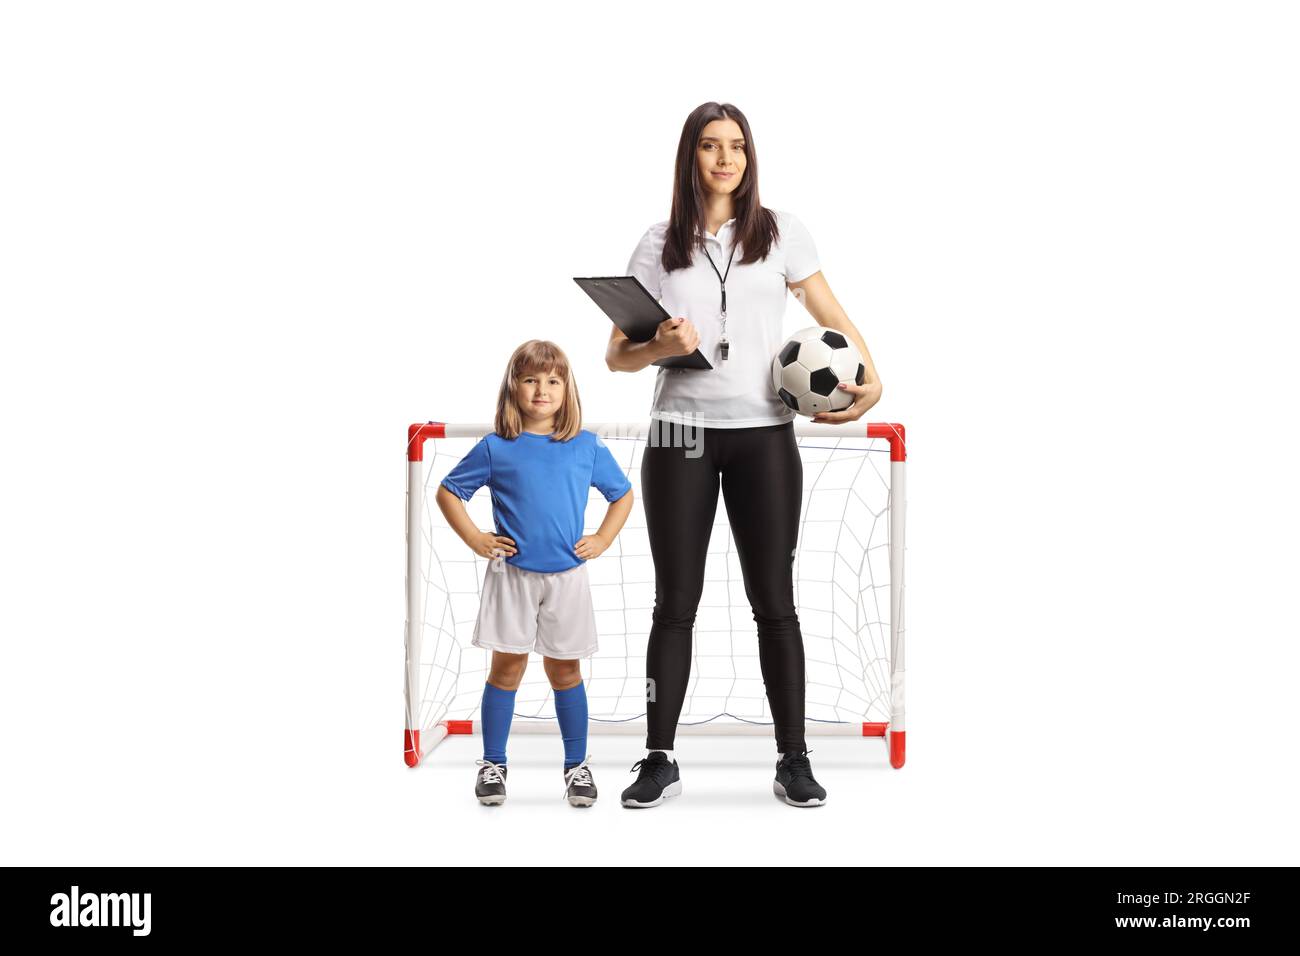 Entraîneur de football féminin debout devant un mini but avec une petite fille isolée sur fond blanc Banque D'Images